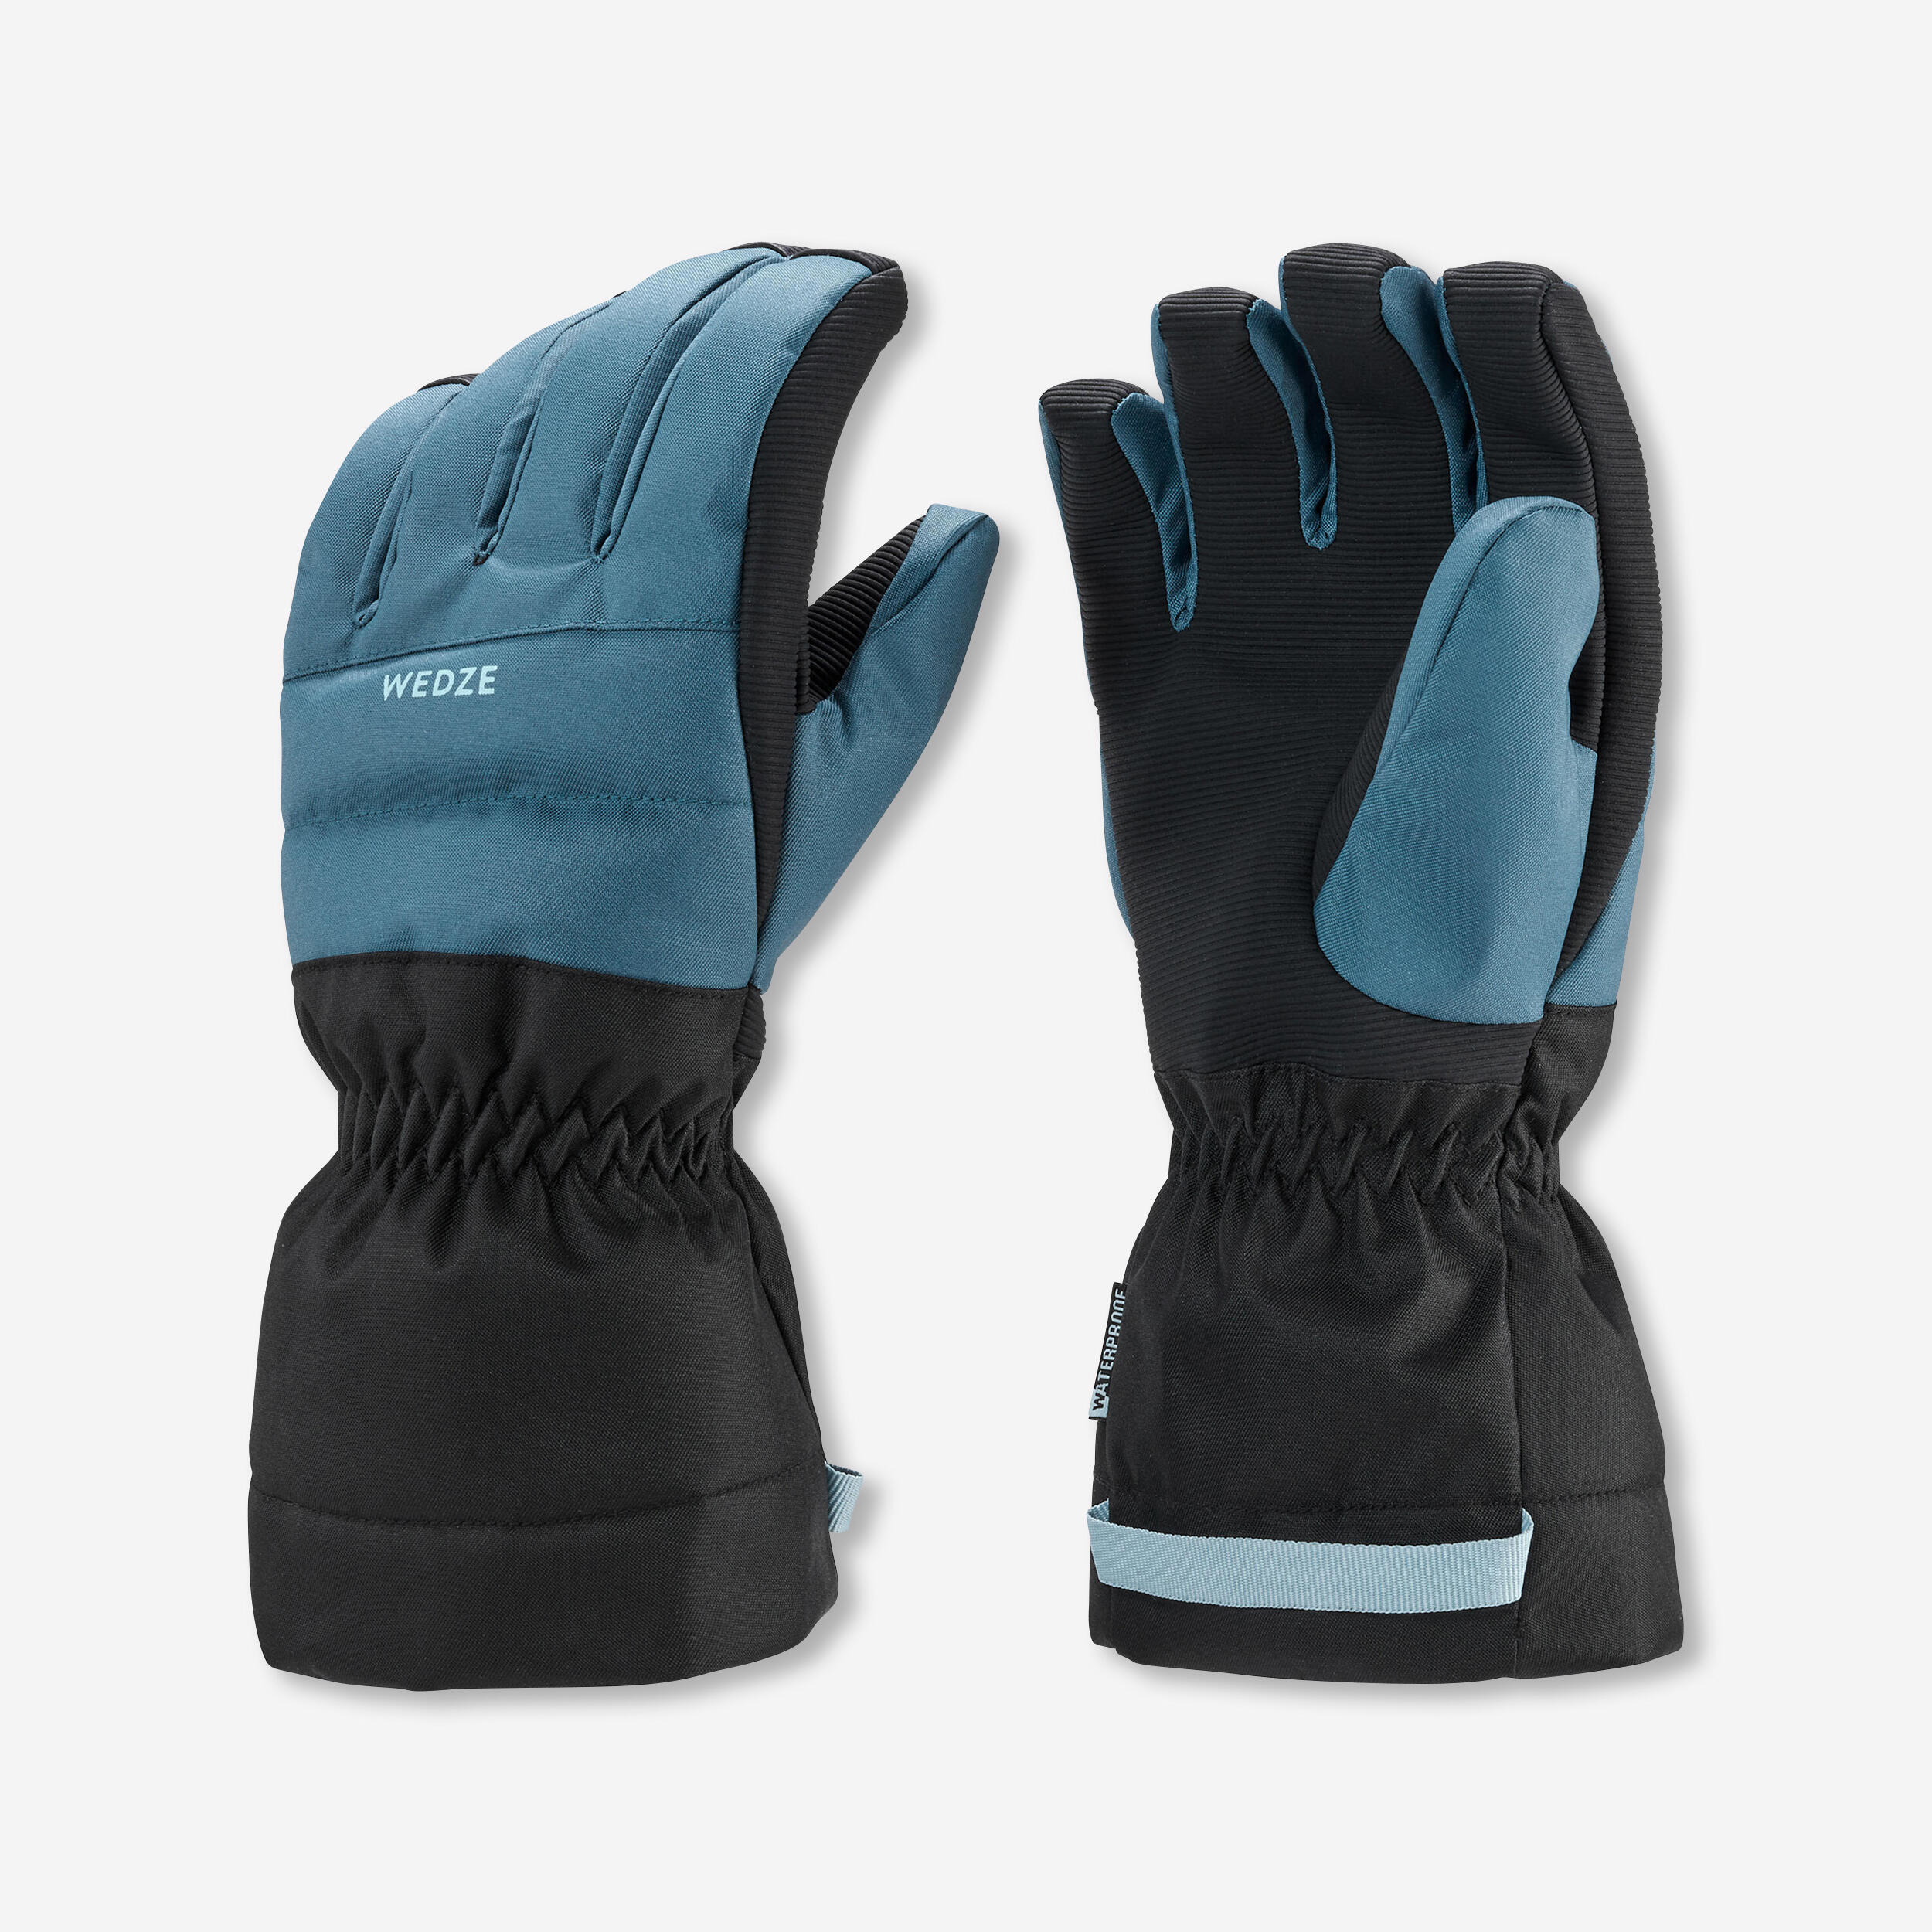 gants de ski enfant chauds et impermeables 500 bleus denim - wedze